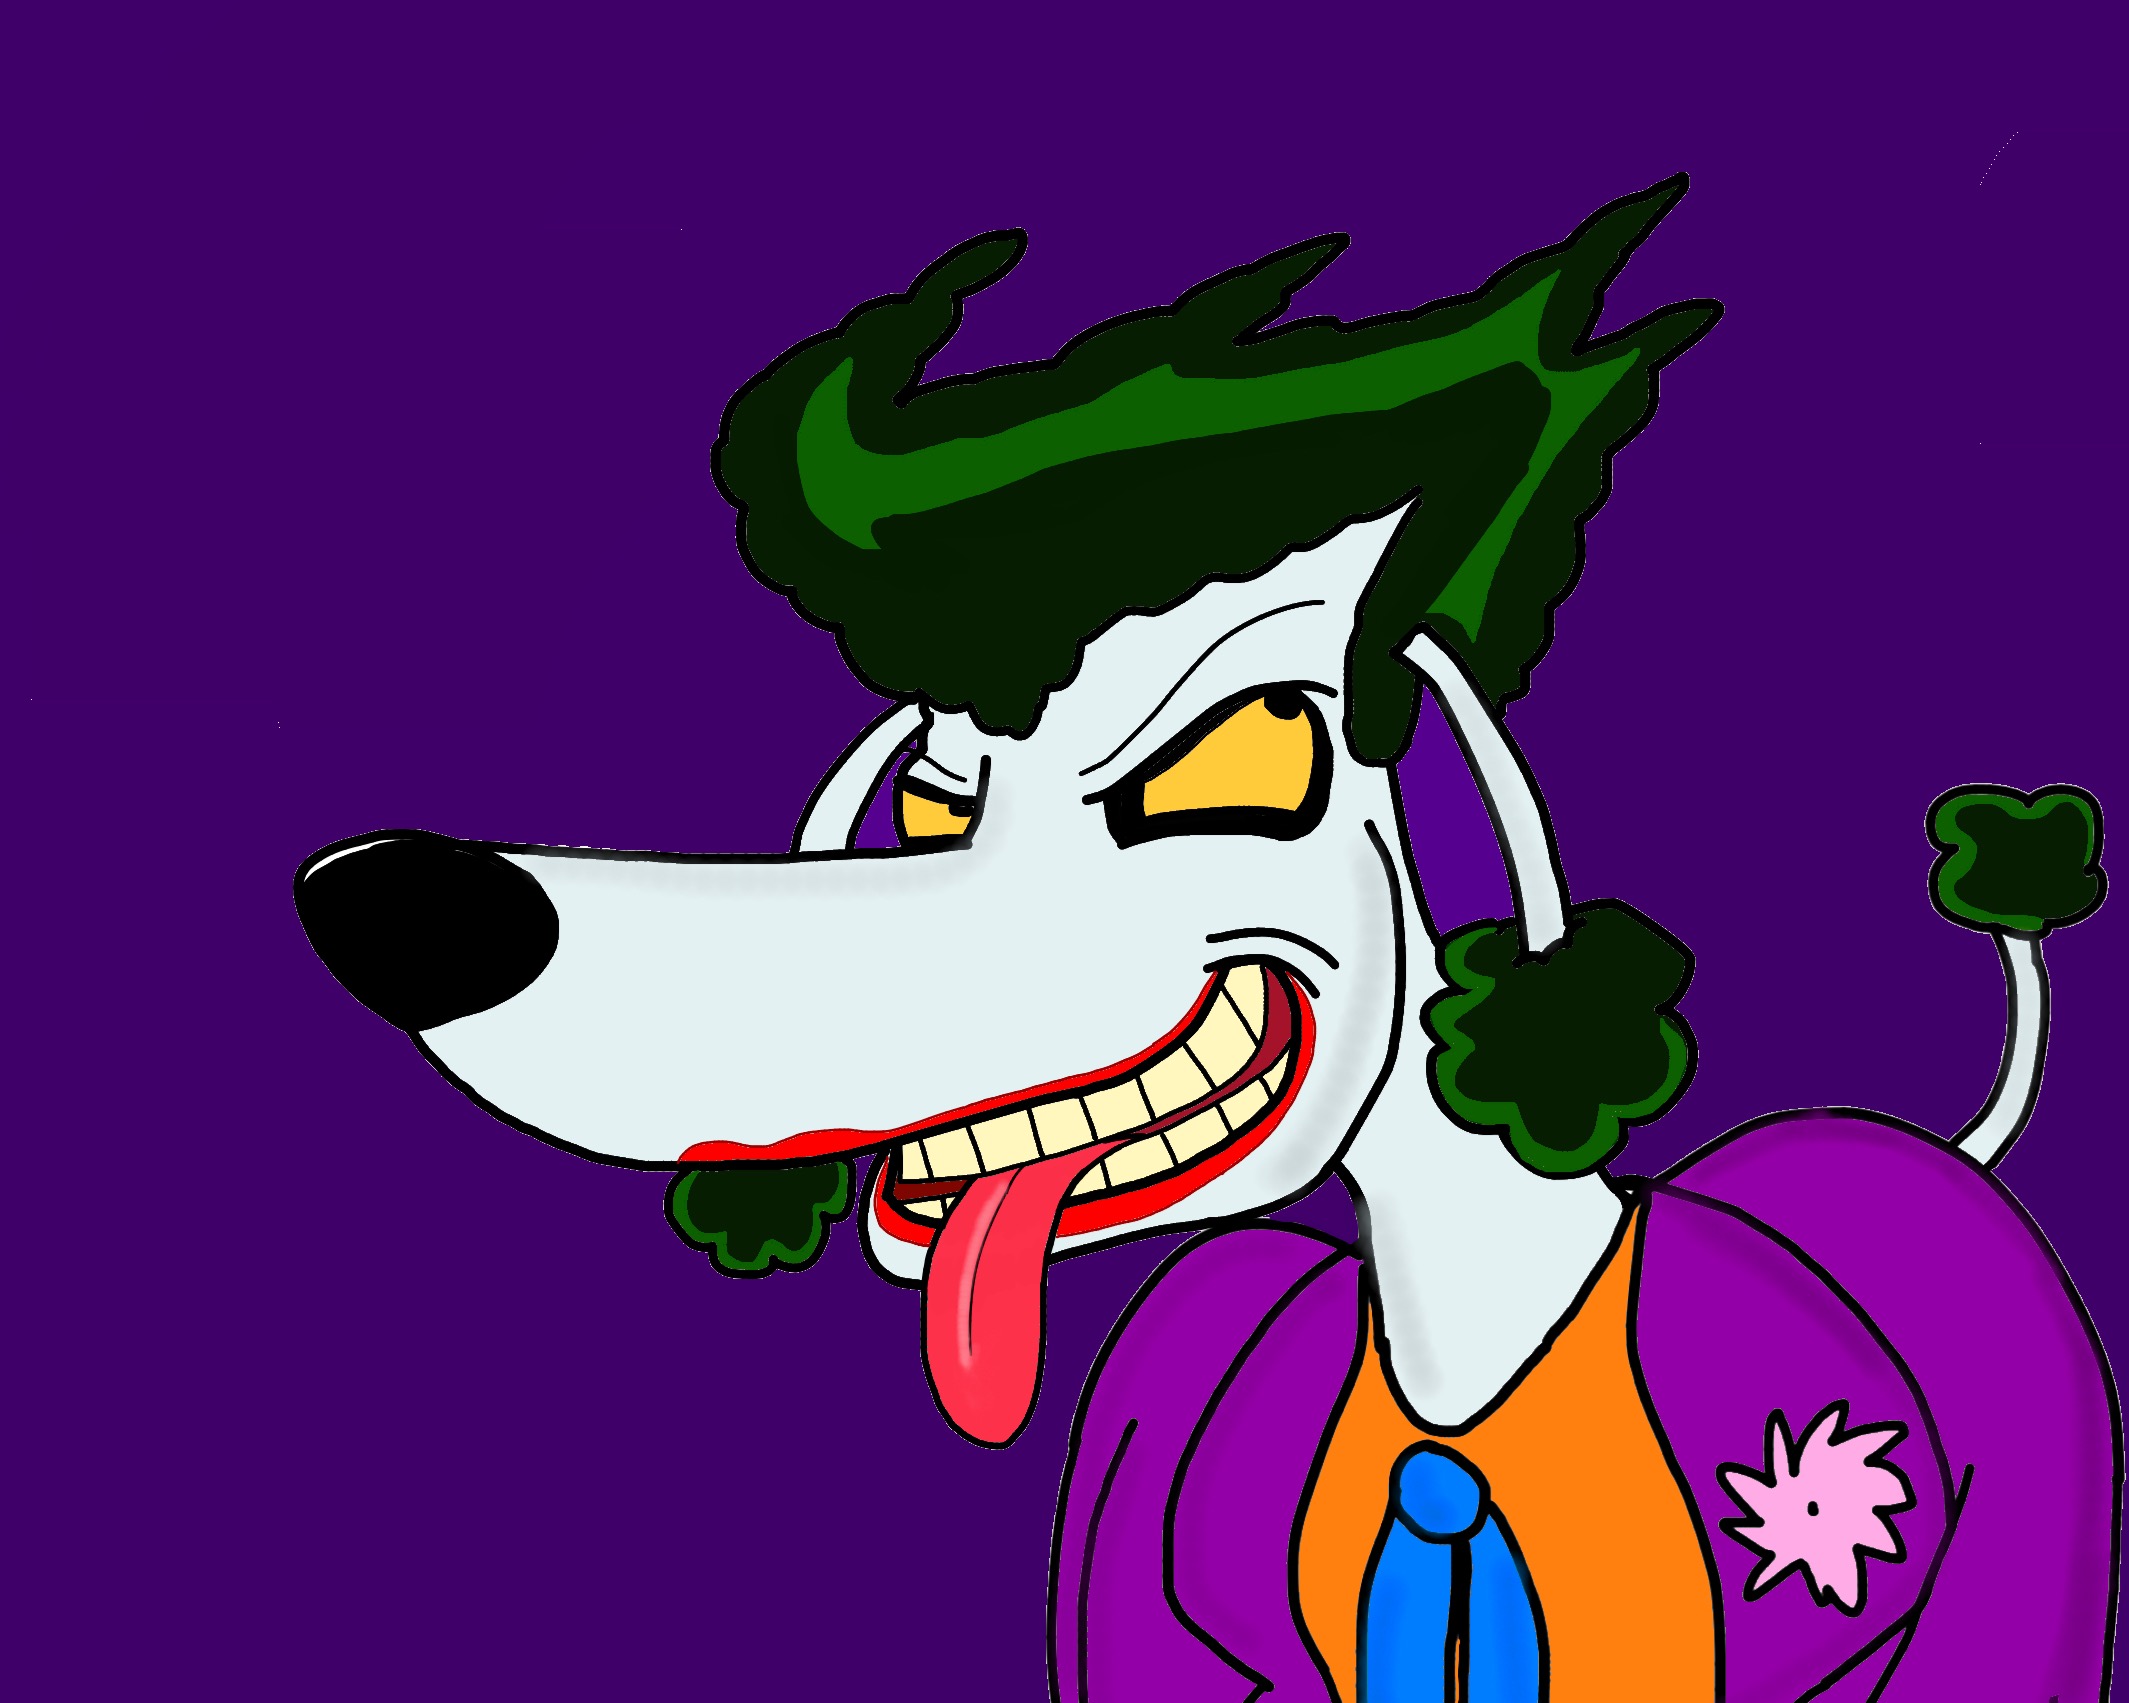 Anthro Joker poodle by BtasJokerFan